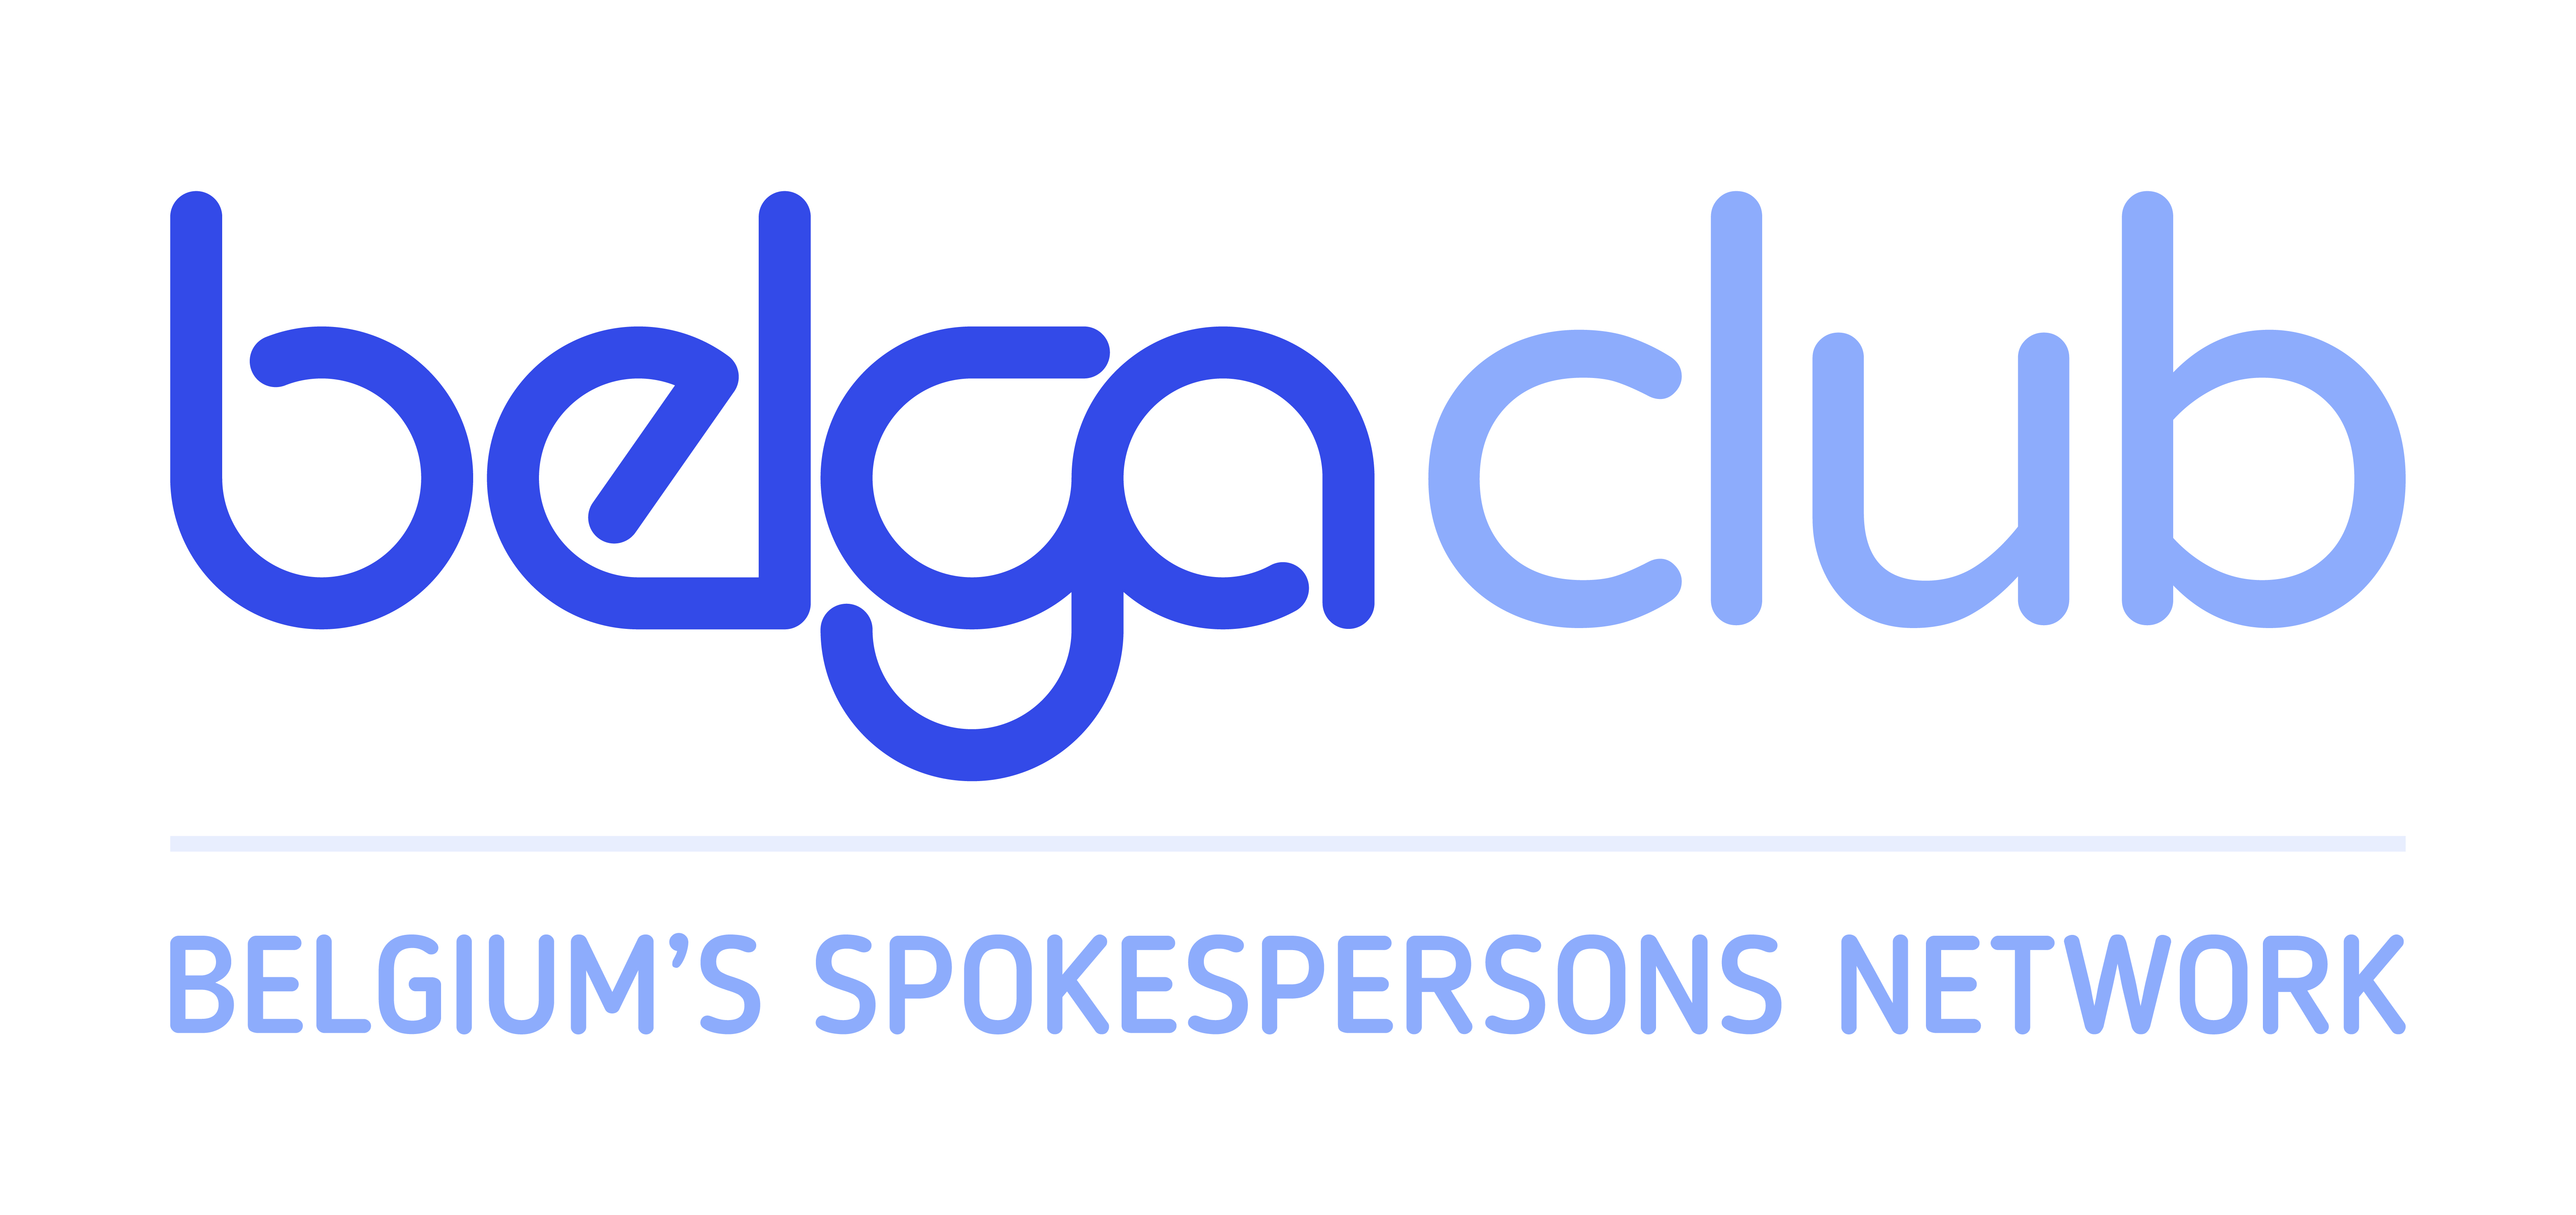 BelgaClub